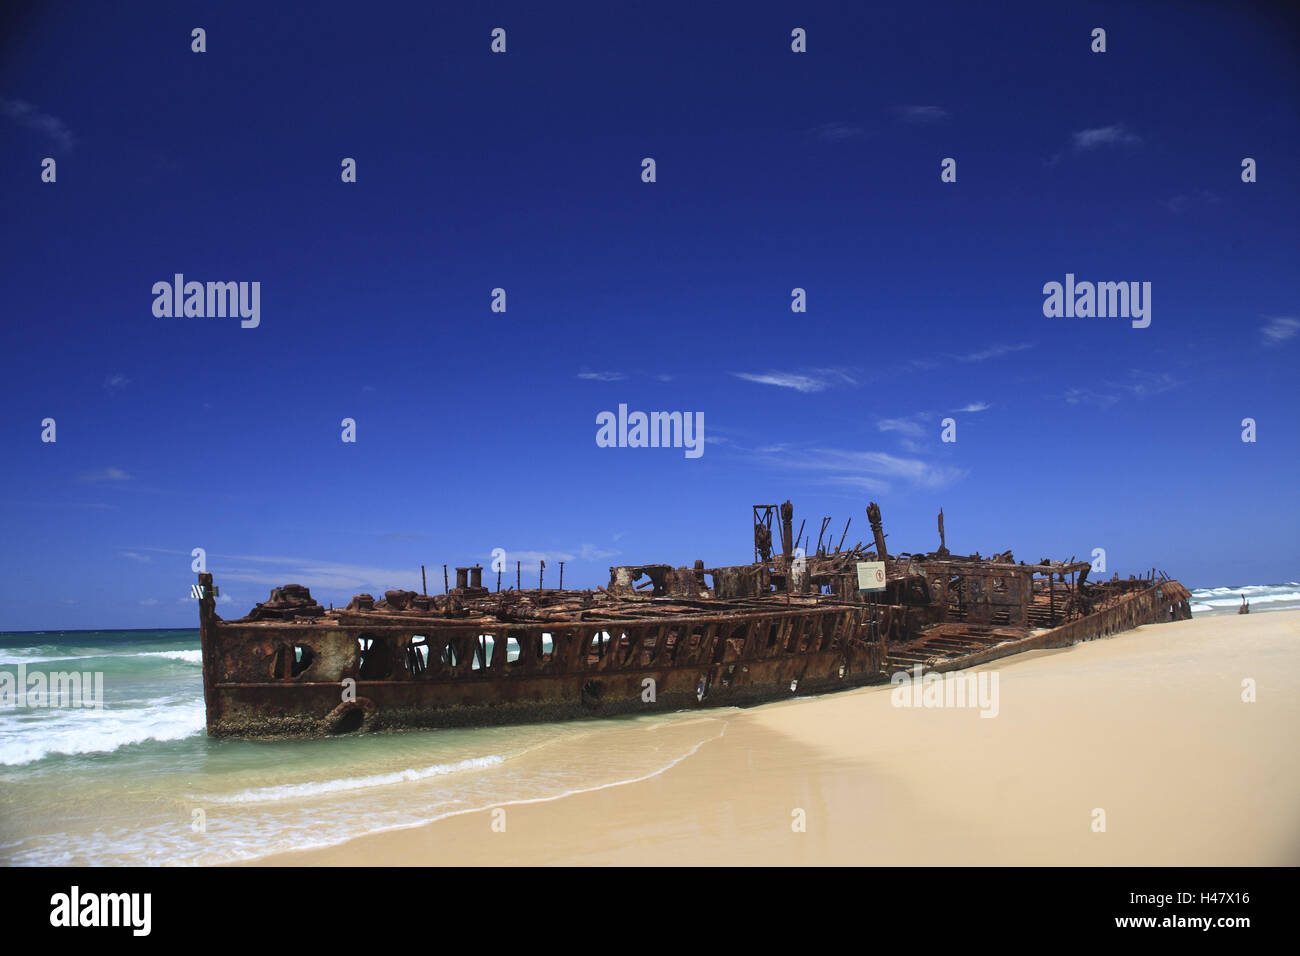 L'Australie, Fraser Island, plage, épave, la destination, le lieu d'intérêts, épave, navire, demeure, paquebot de ligne, island, rouille, rouille, côte, mer, plage de sable, mer, océan, brin, cassée, l'expiration, l'transitoriness, quitté, solitude, déserte, le ciel, bleu, l'espace de copie, Banque D'Images